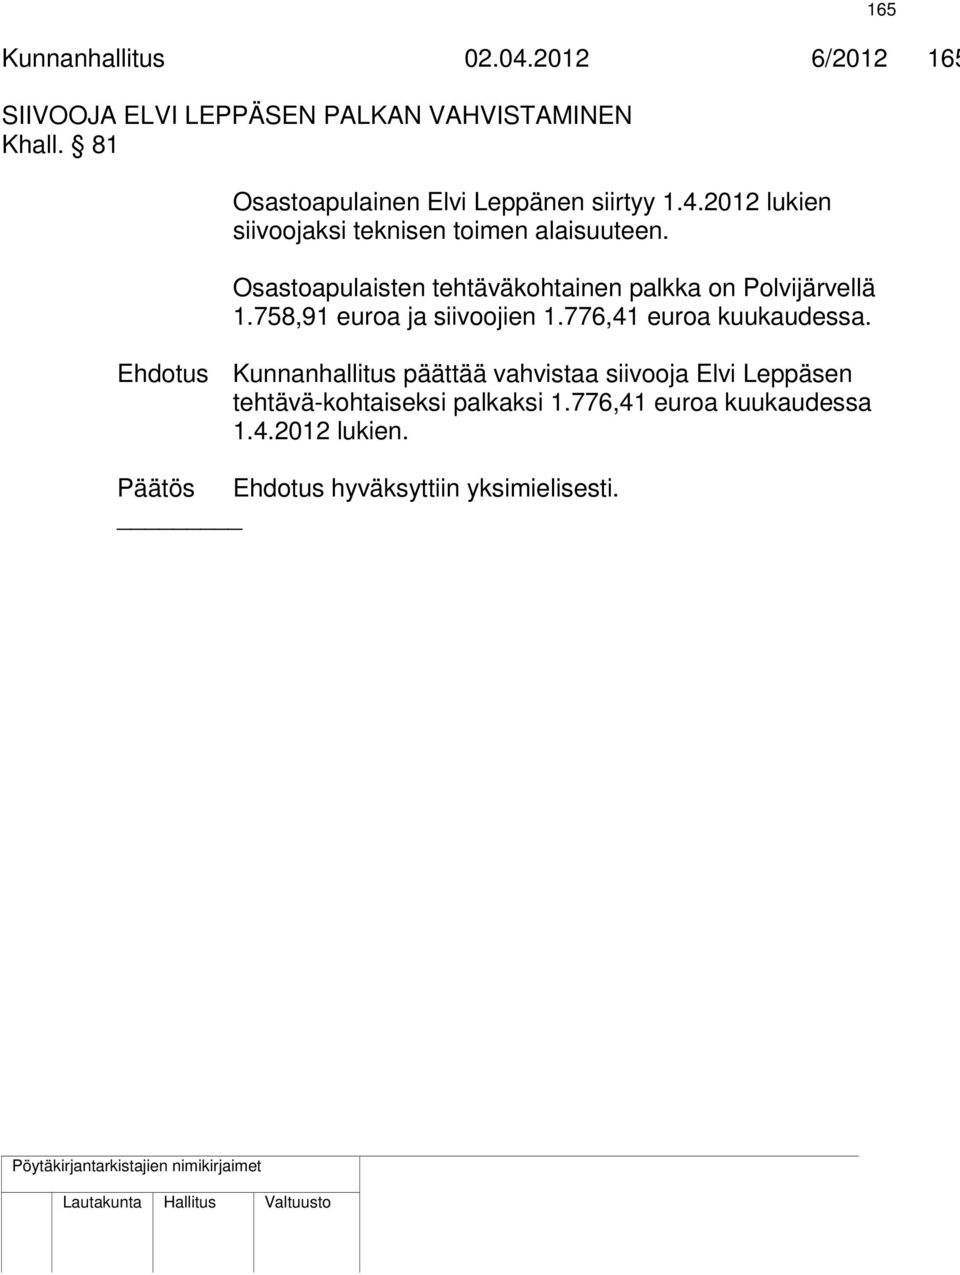 Osastoapulaisten tehtäväkohtainen palkka on Polvijärvellä 1.758,91 euroa ja siivoojien 1.776,41 euroa kuukaudessa.